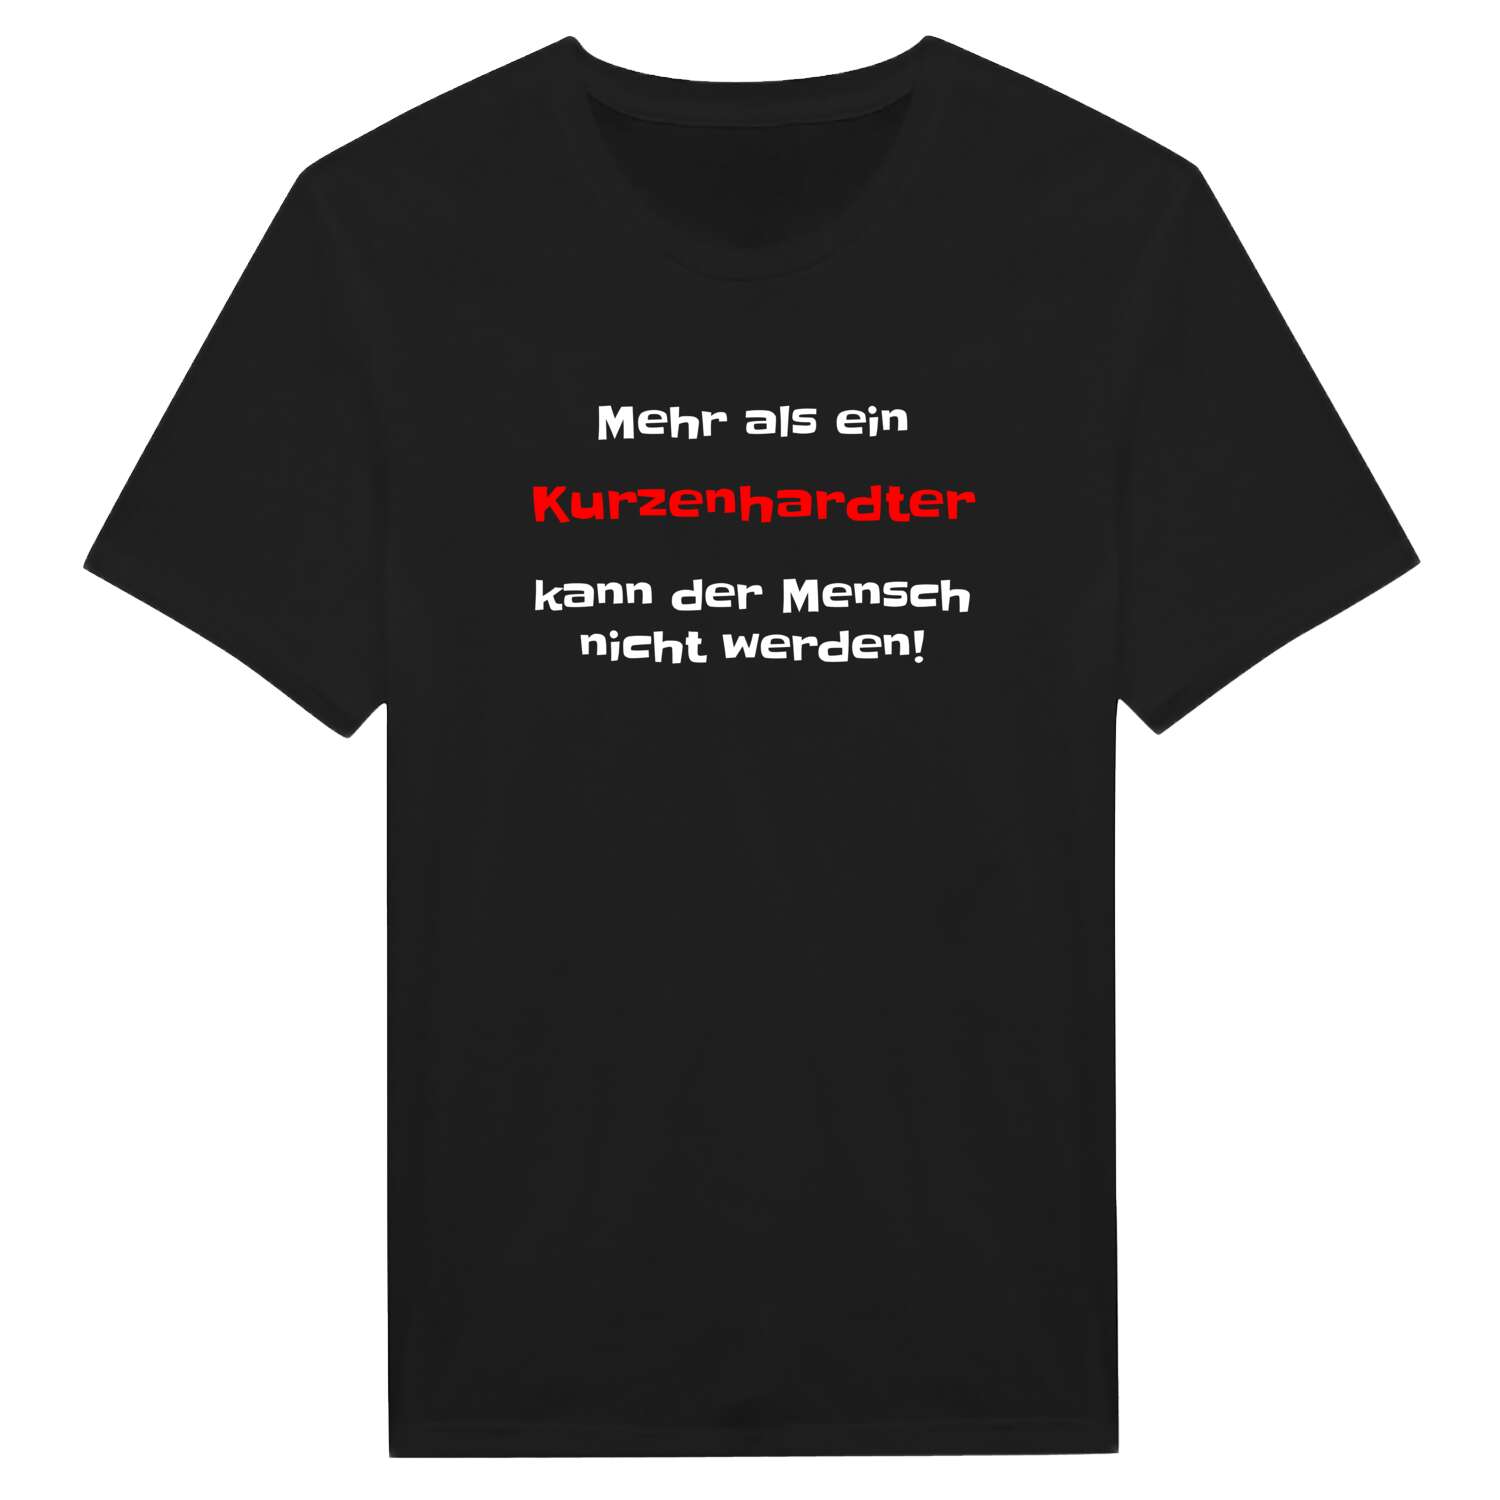 Kurzenhardt T-Shirt »Mehr als ein«